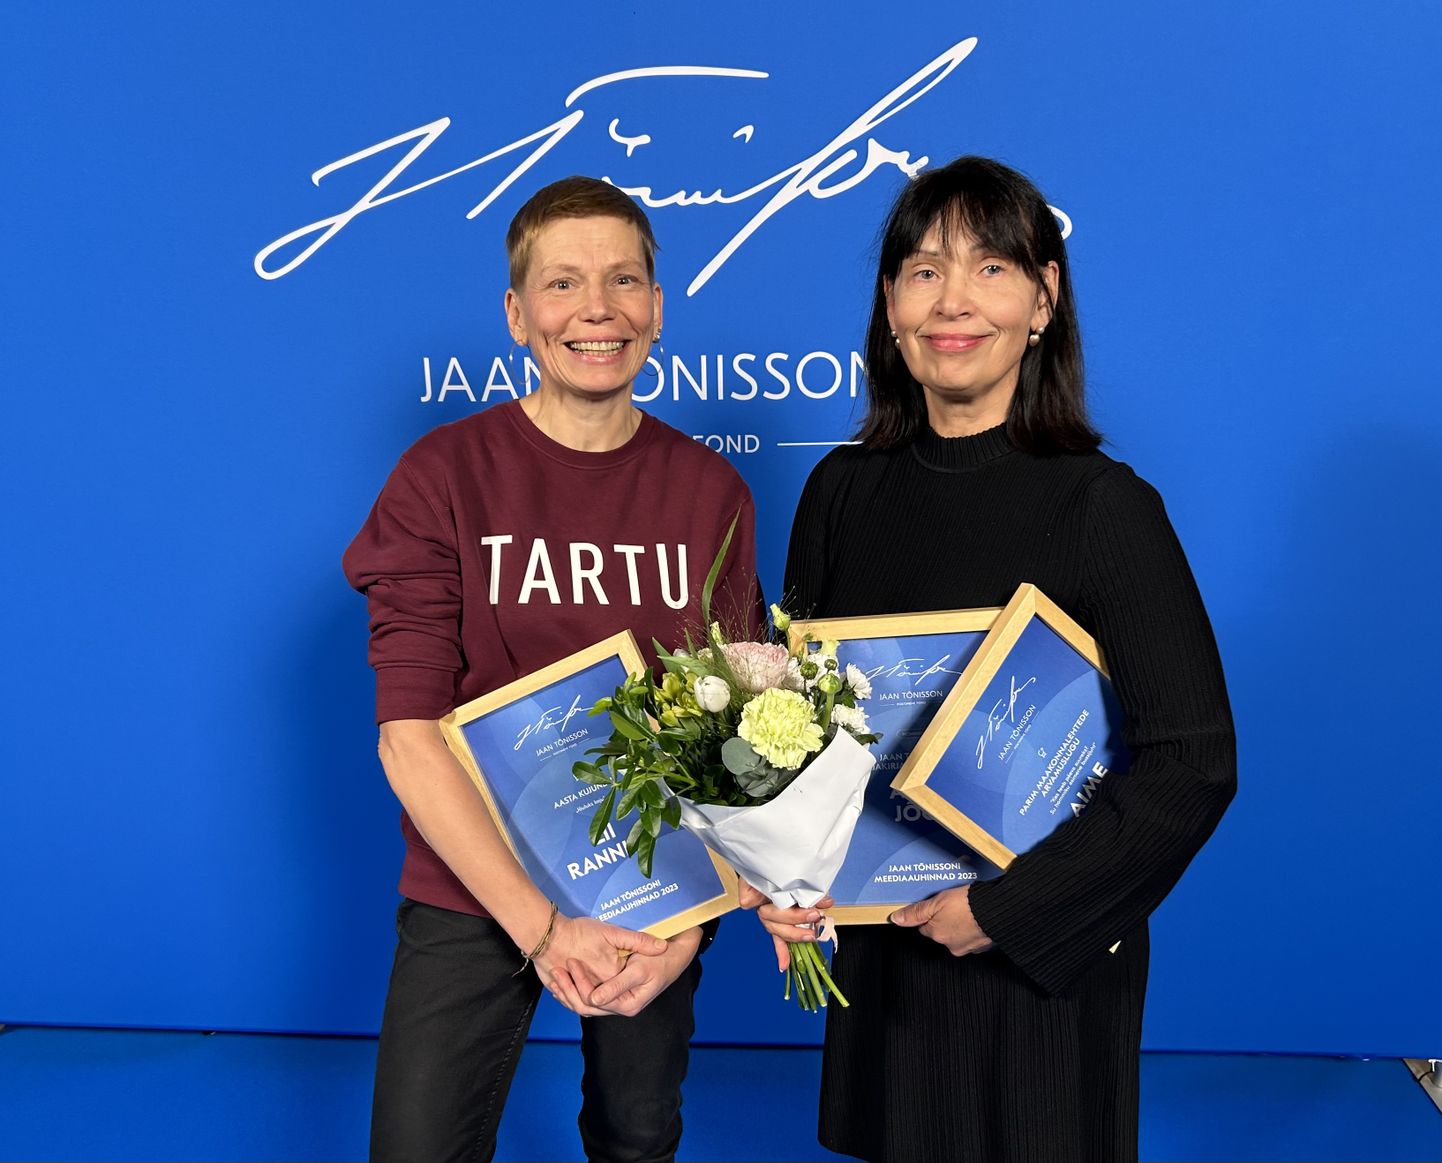 Jaan Tõnissoni meediaauhindade jagamisel preemiad pälvinud kujundaja Lii Ranniku (vasakul) ja ajakirjanik Aime Jõgi.